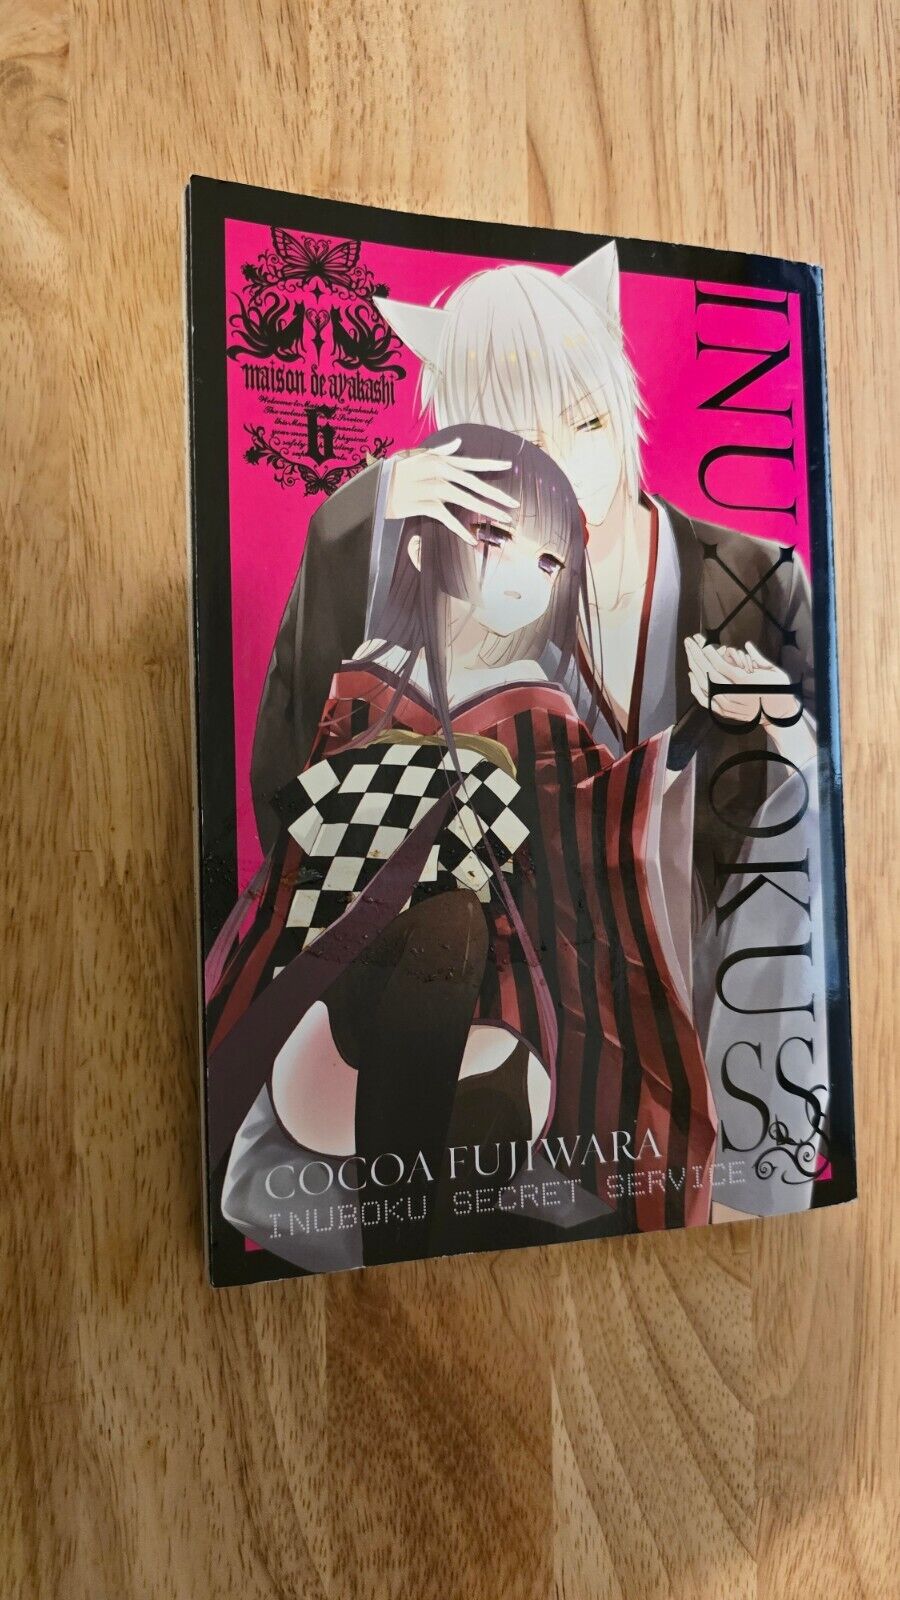 Inu x Boku SS, Vol 6 - Paperback By Fujiwara, Cocoa English Manga